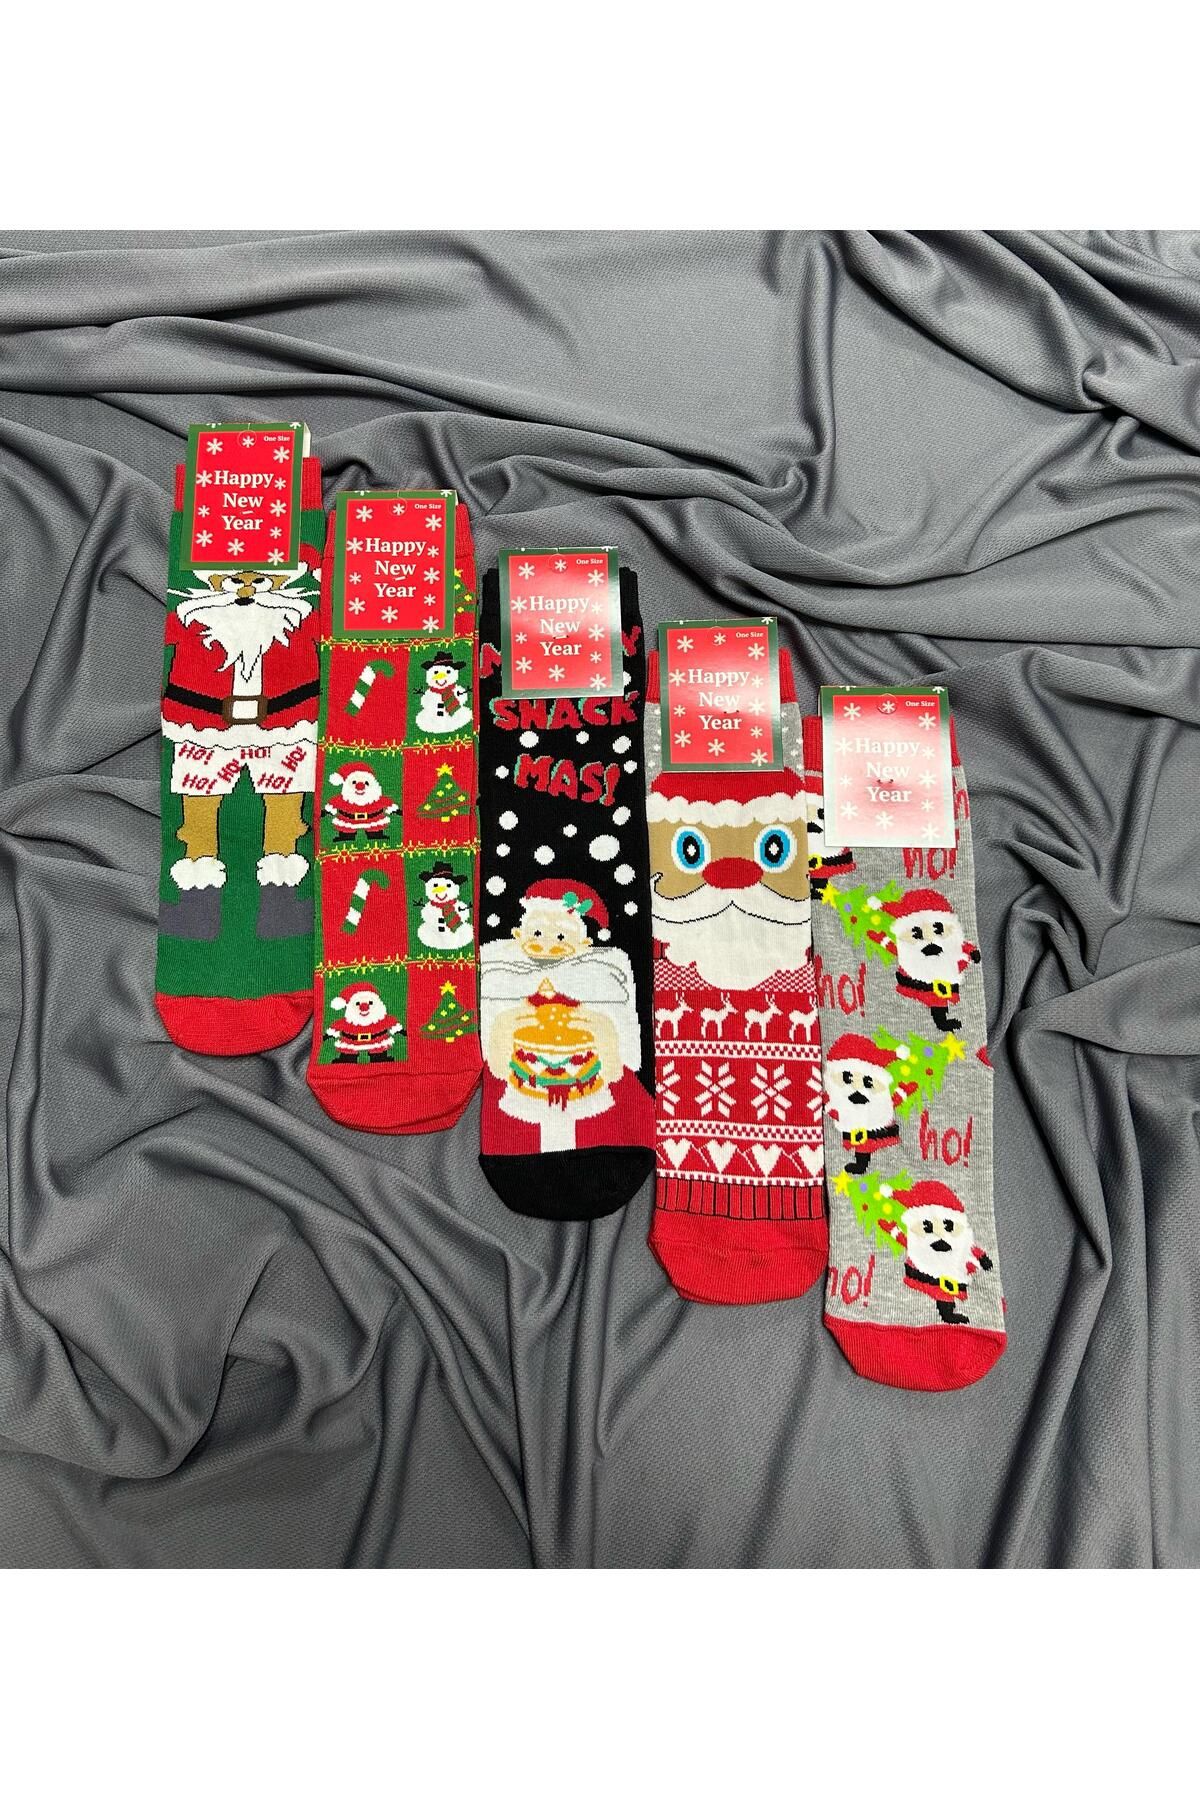 KRC & GLOBAL TEKSTİL Unisex Yılbaşı - Noel - Christmas Temalı Çoraplar 5'Li